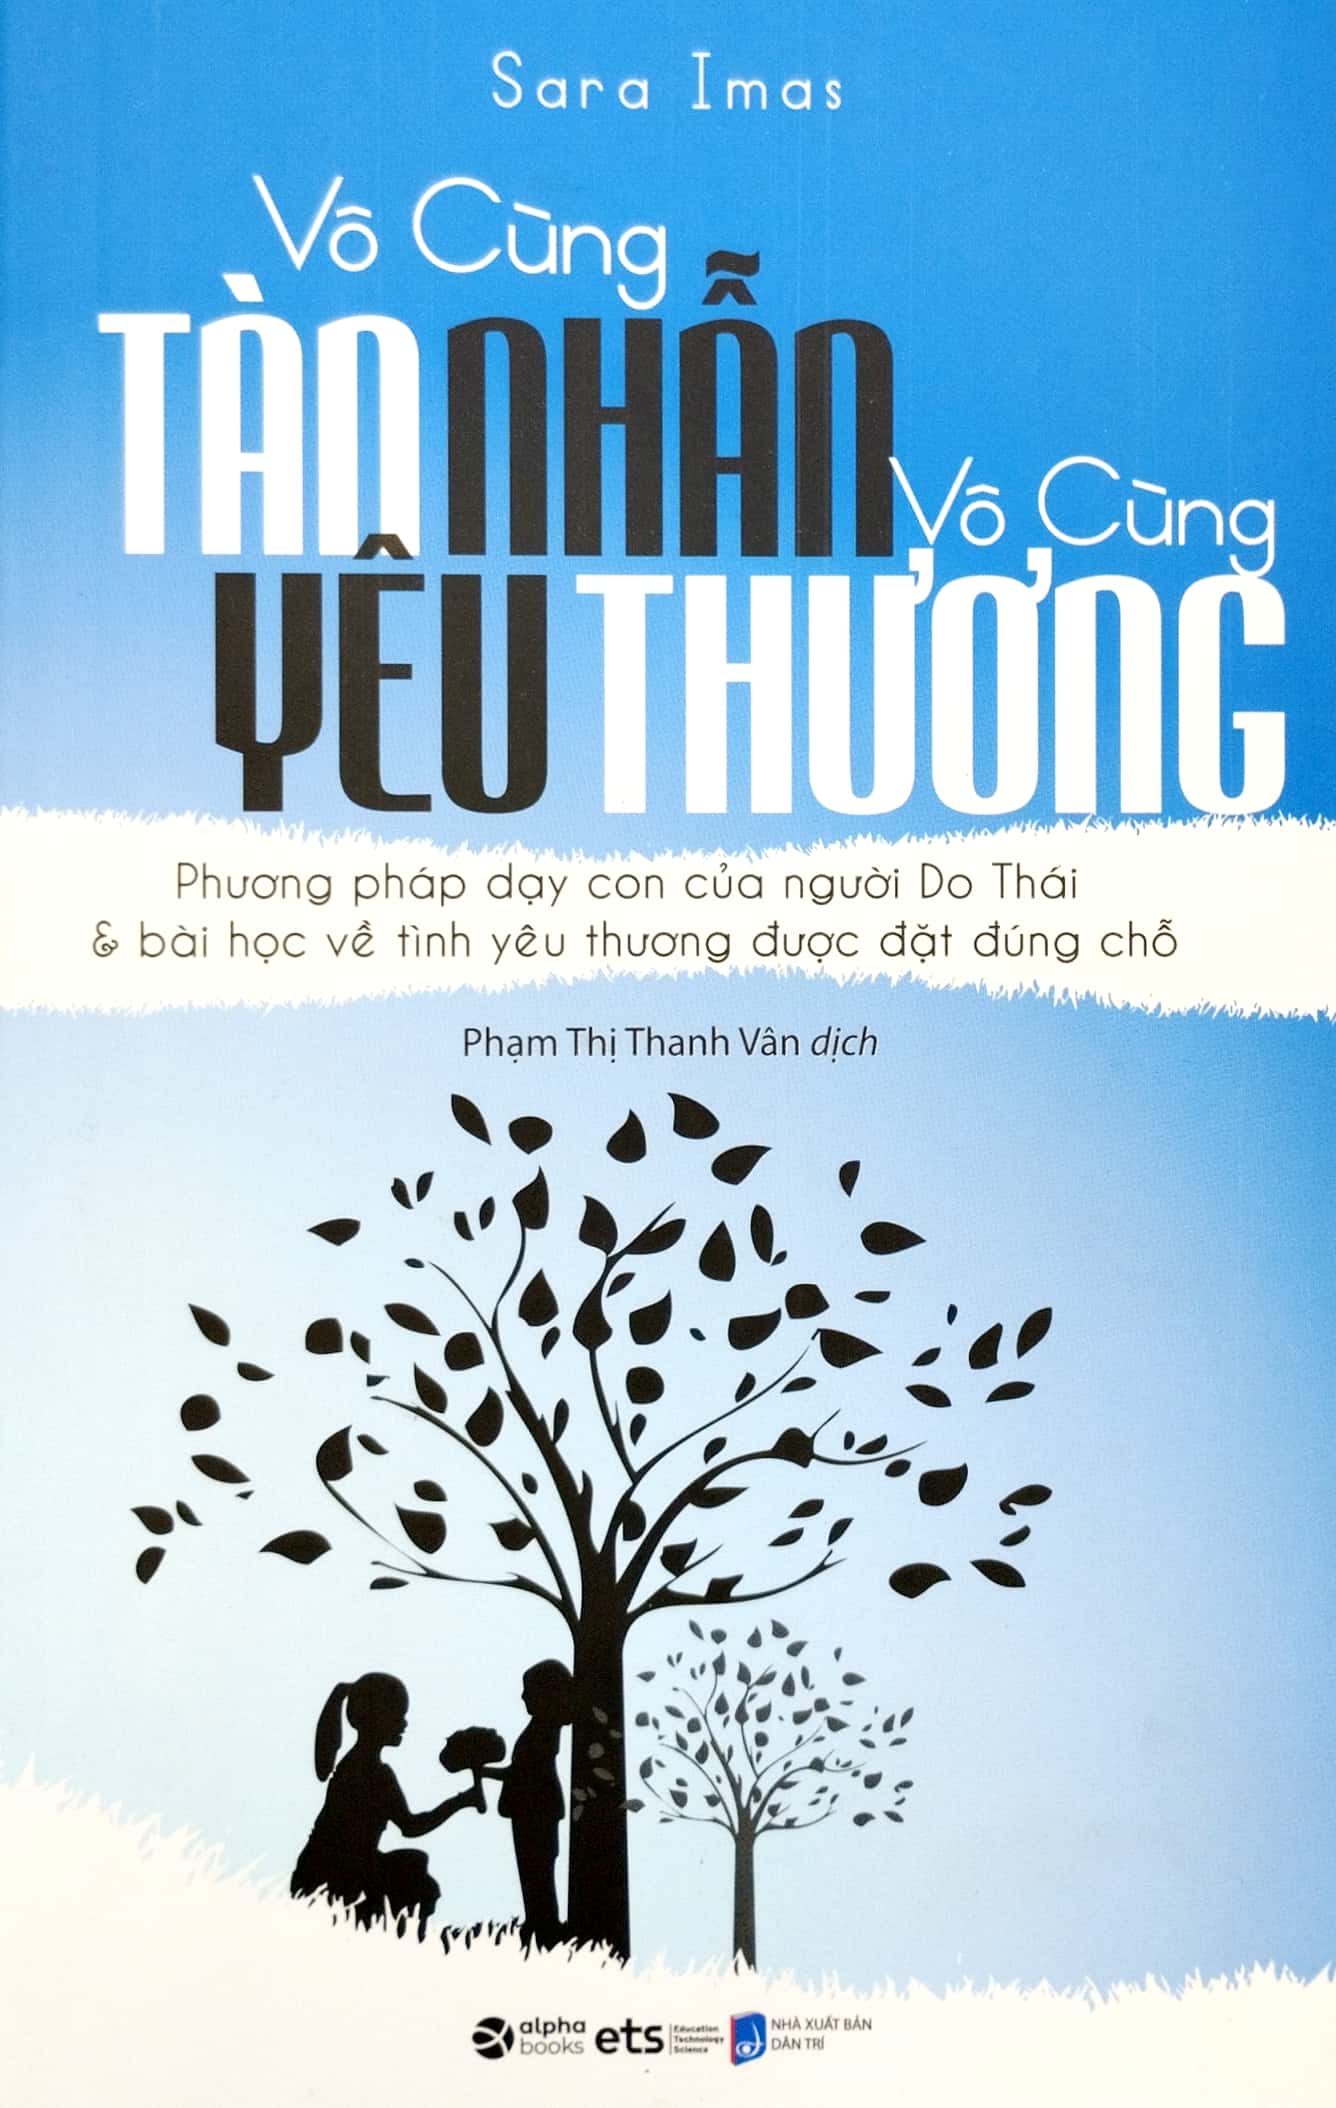 Vo Cung Tan Nhan Vo Cung Yeu Thuong 11 Min